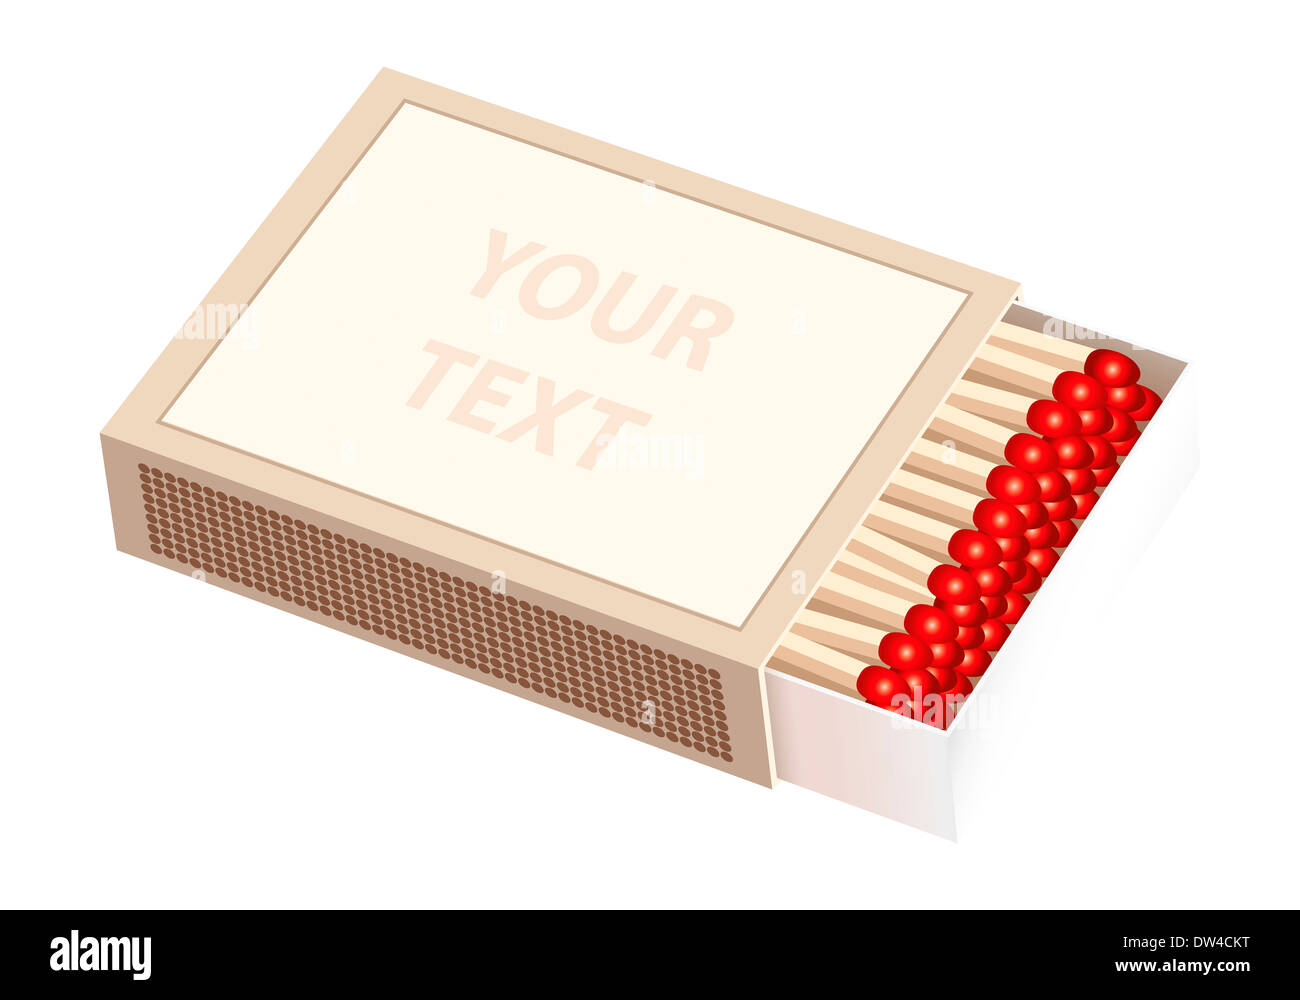 Offenen schob Matchbox - die leere Vorderseite der Box kann individuell beschriftet werden. Stockfoto